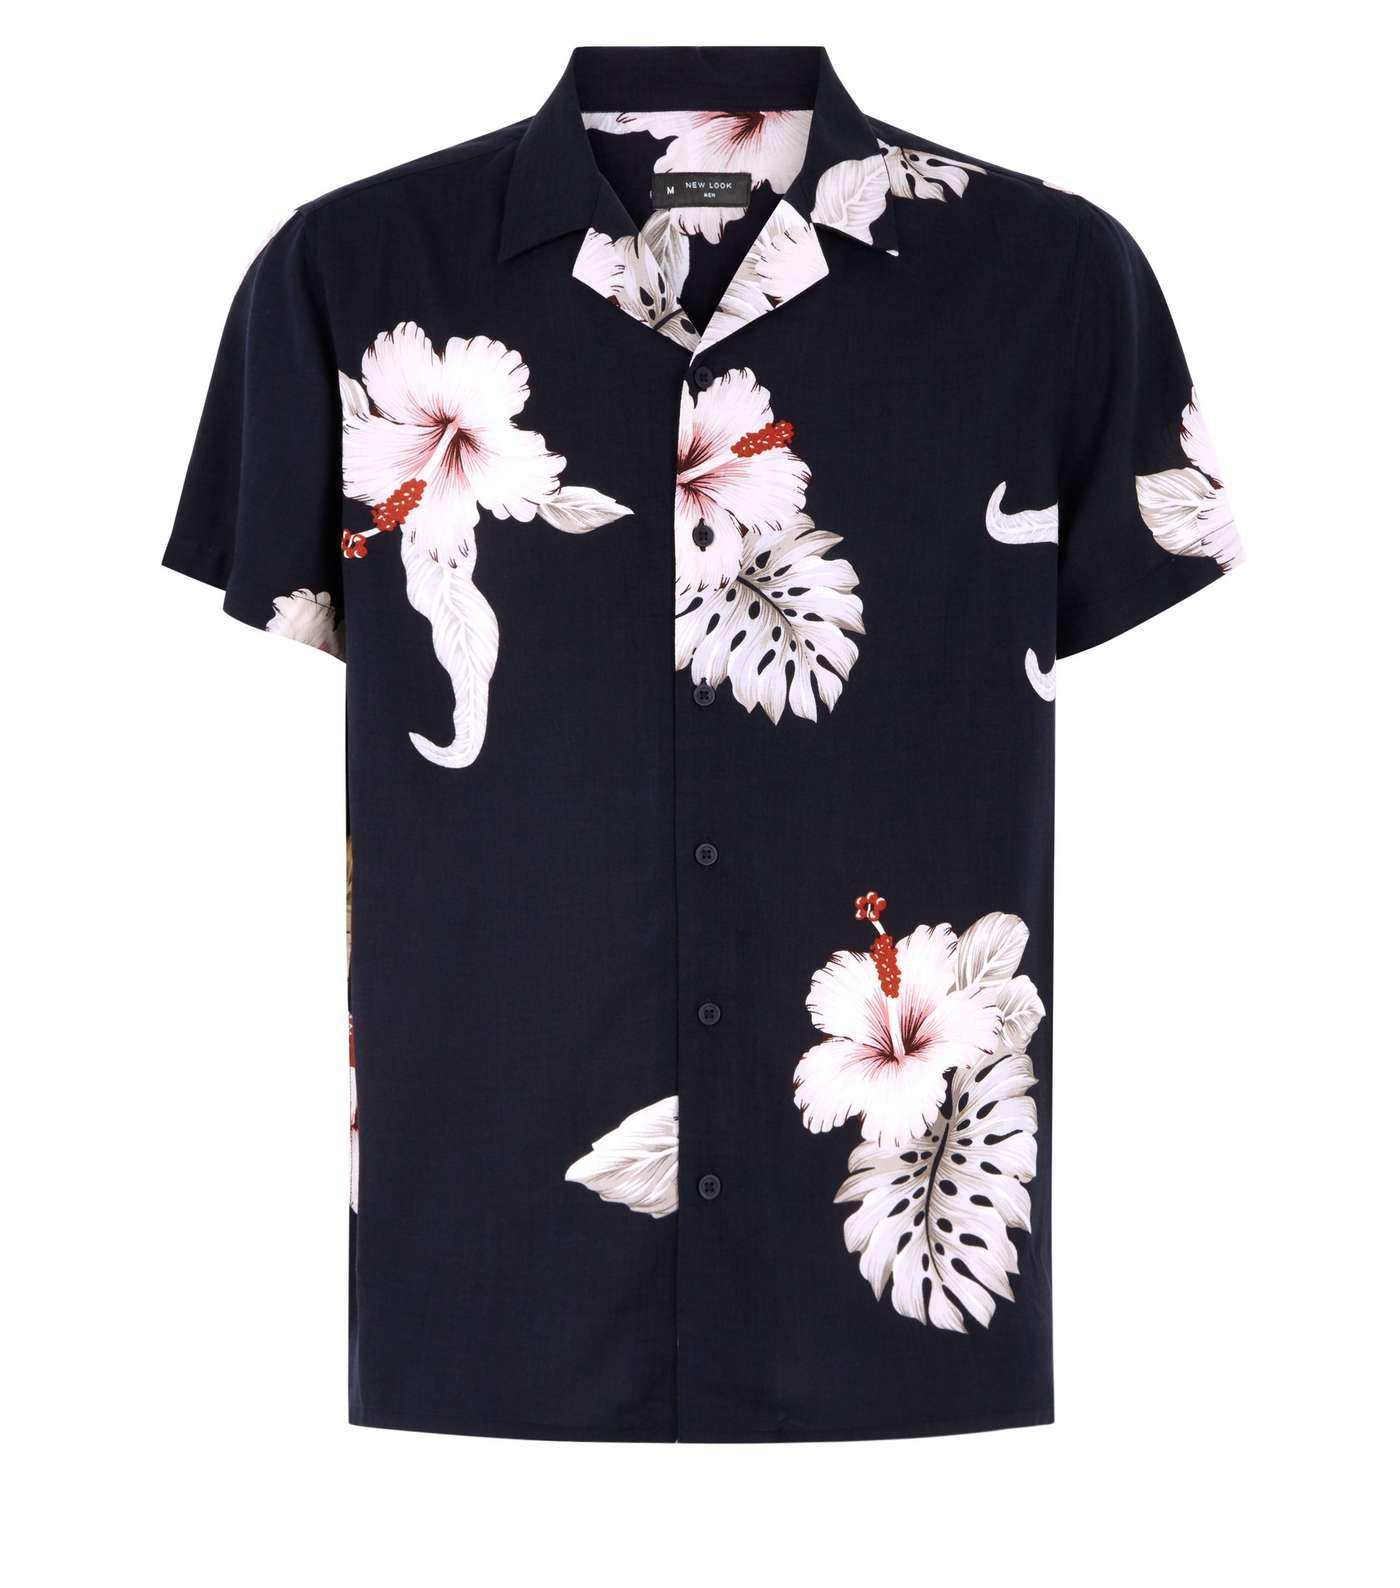 Black Large Floral Print Short Sleeve Shirt Image 4